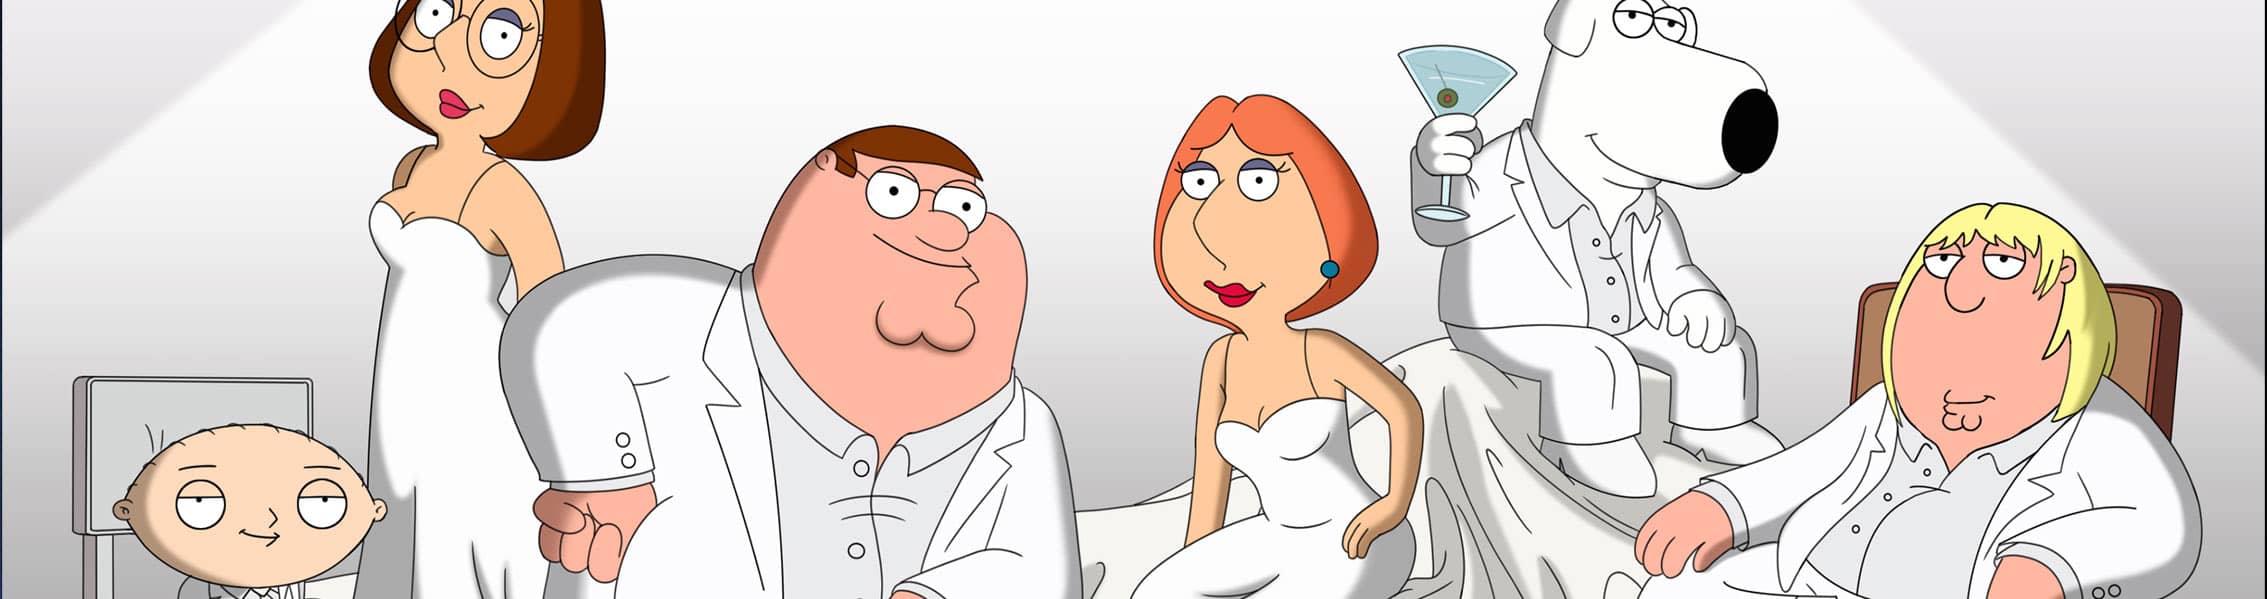 خرید محصولات فمیلی گای (Family Guy)